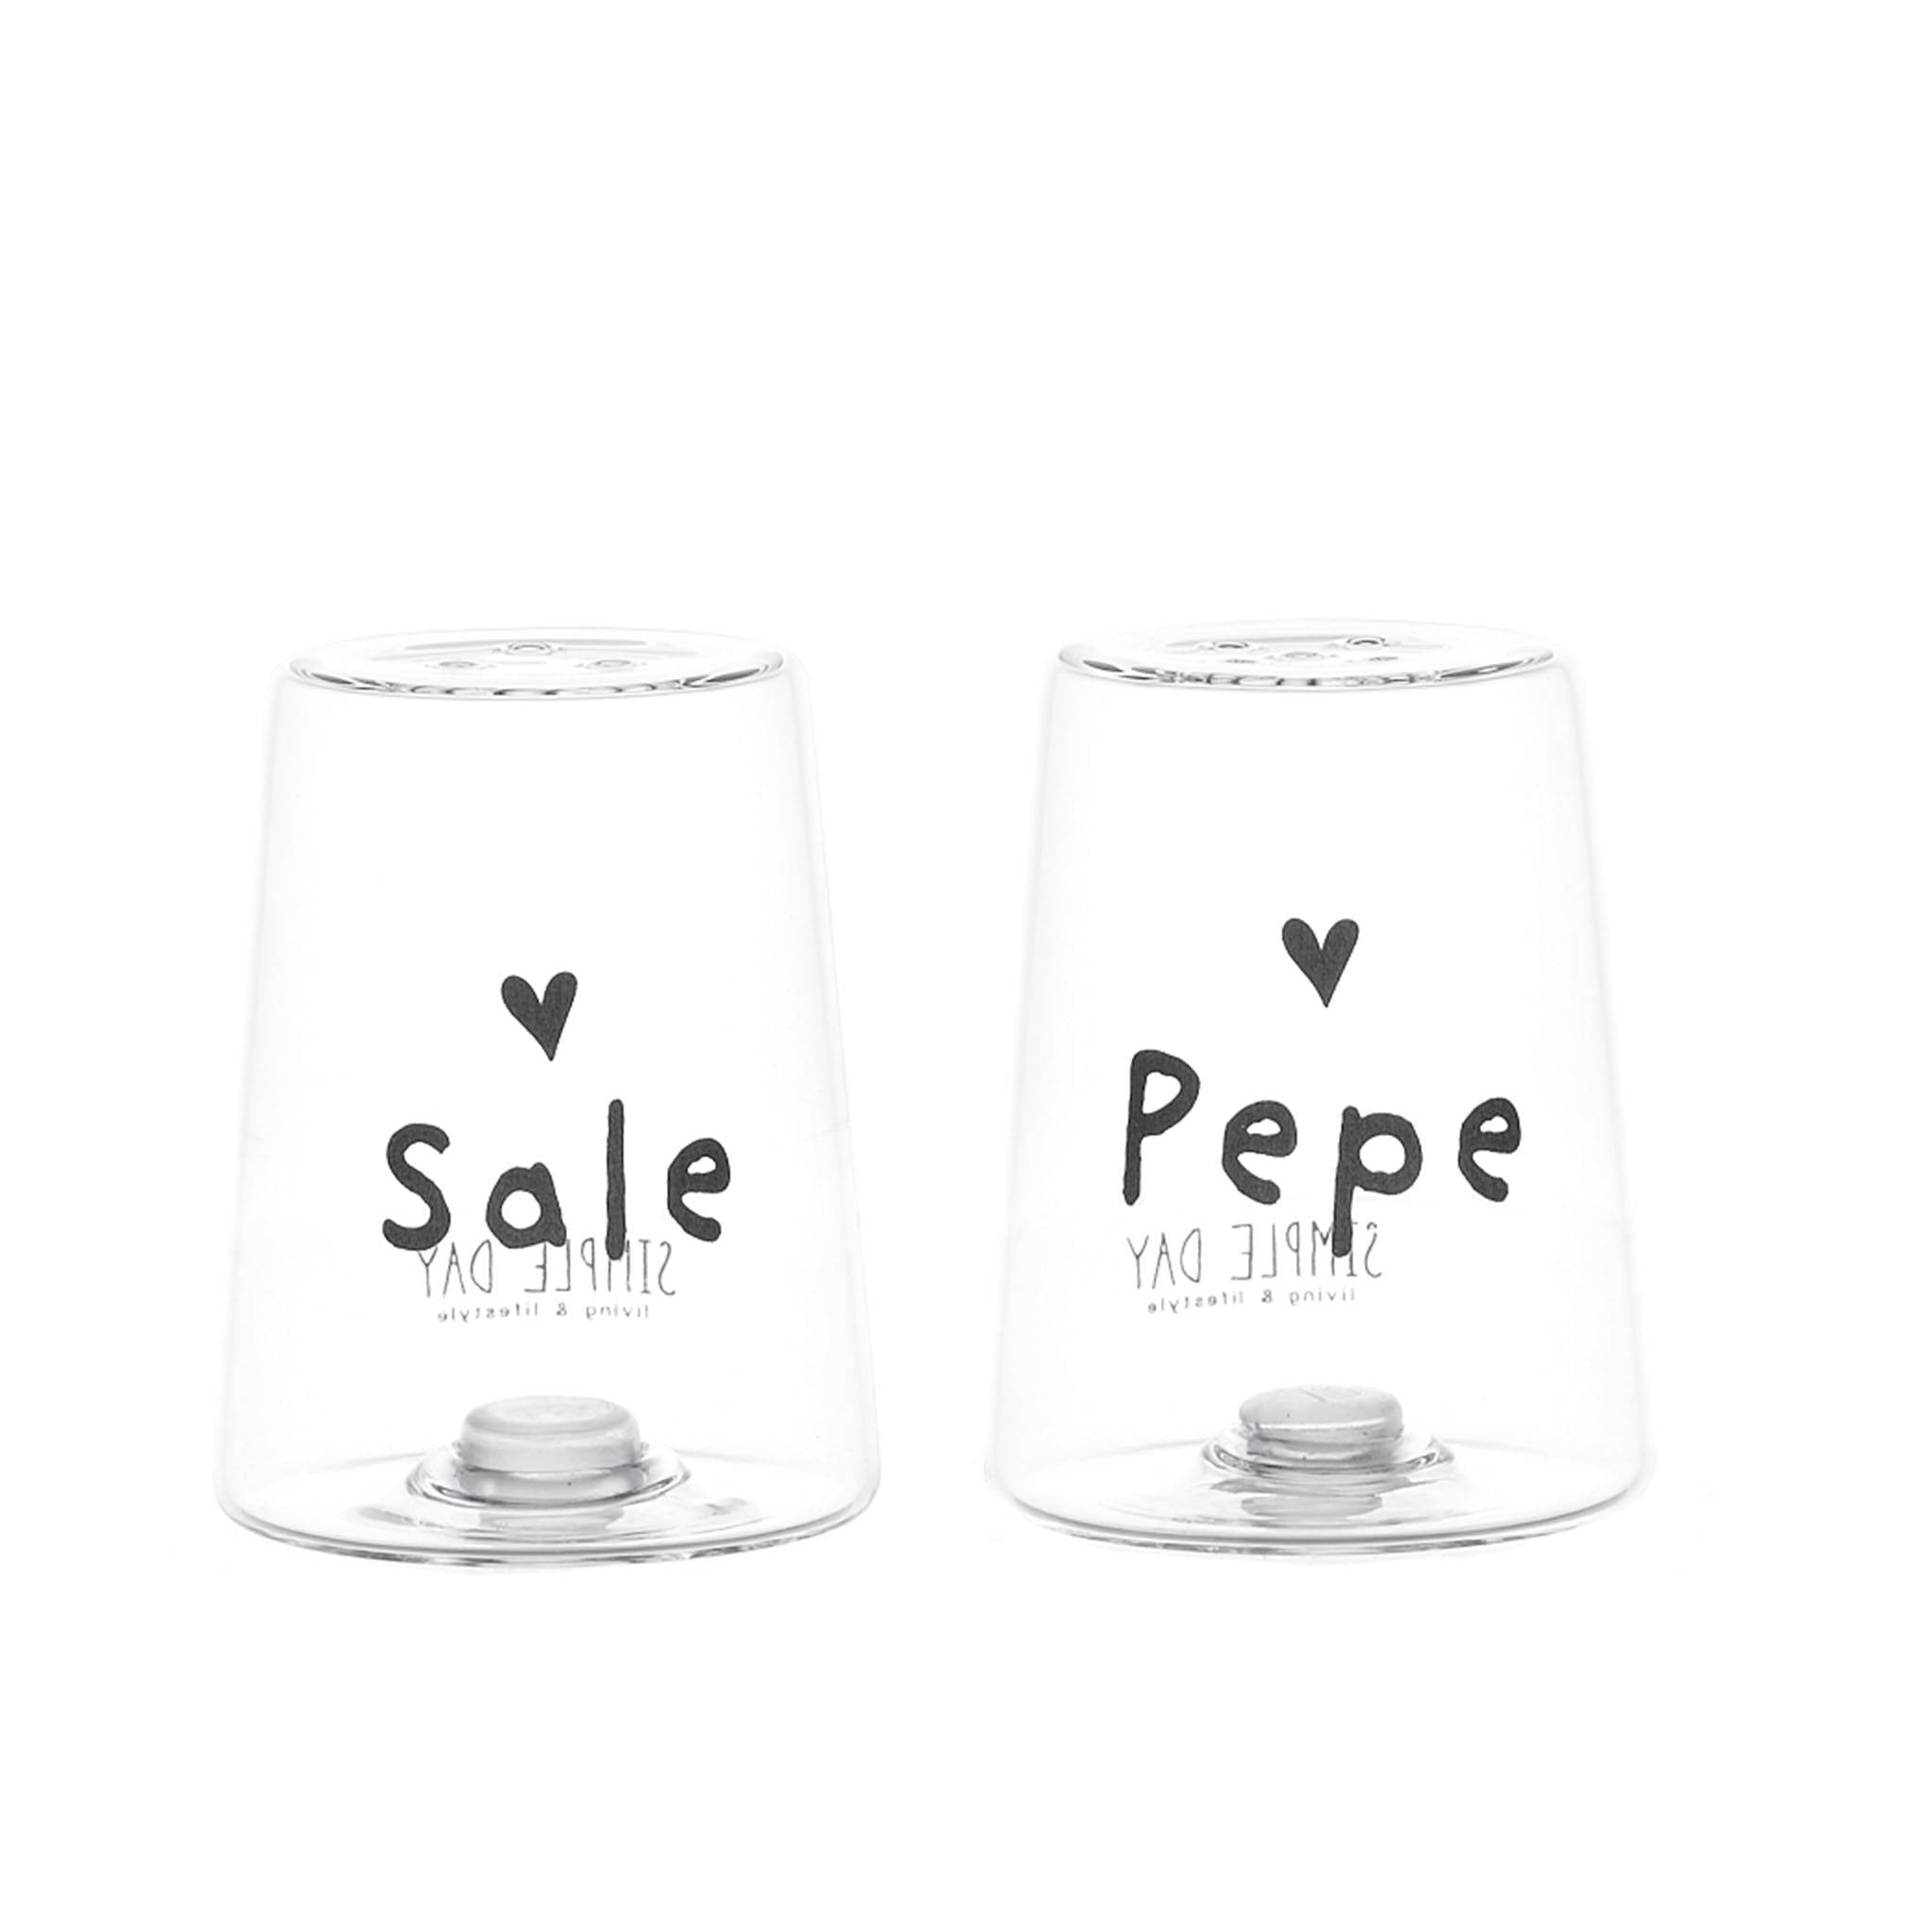 Salz und Pfeffer "Sale“ und "Pepe" mit Herz